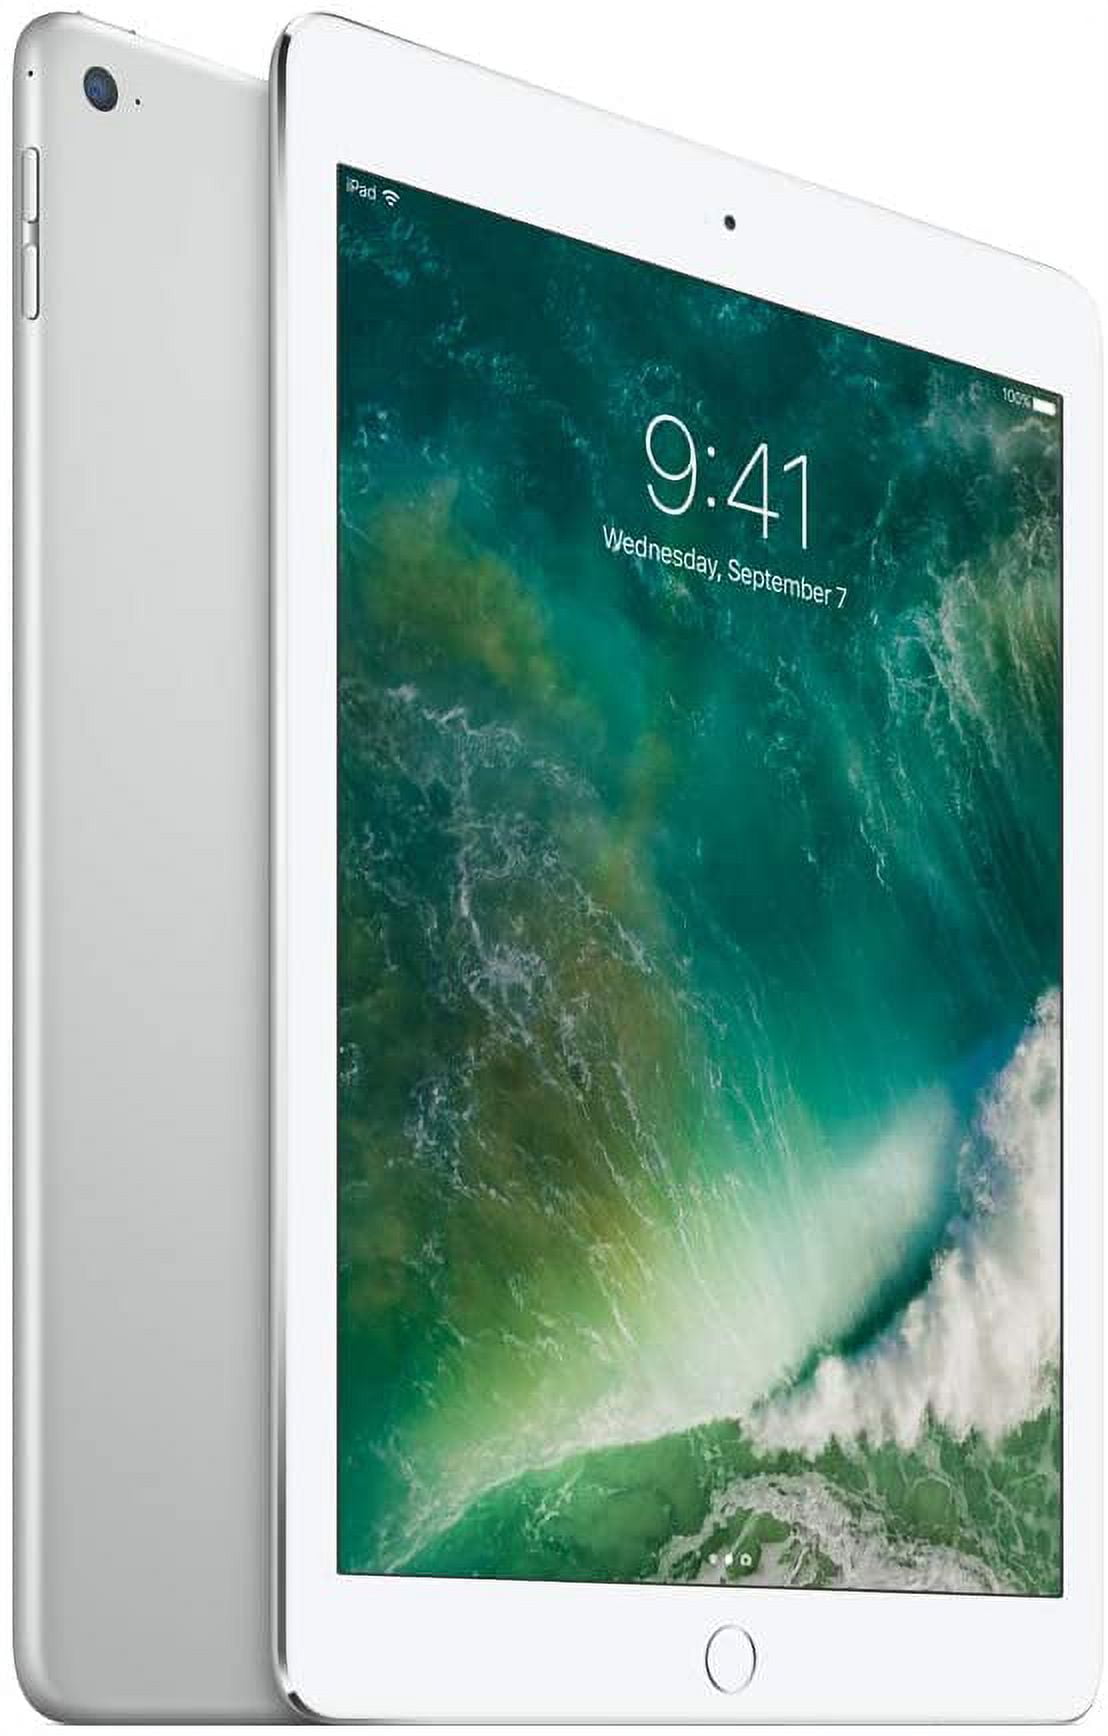 Apple iPad 5th Generation, Wi-Fi + Cellular, Silver 32GB (Scratch